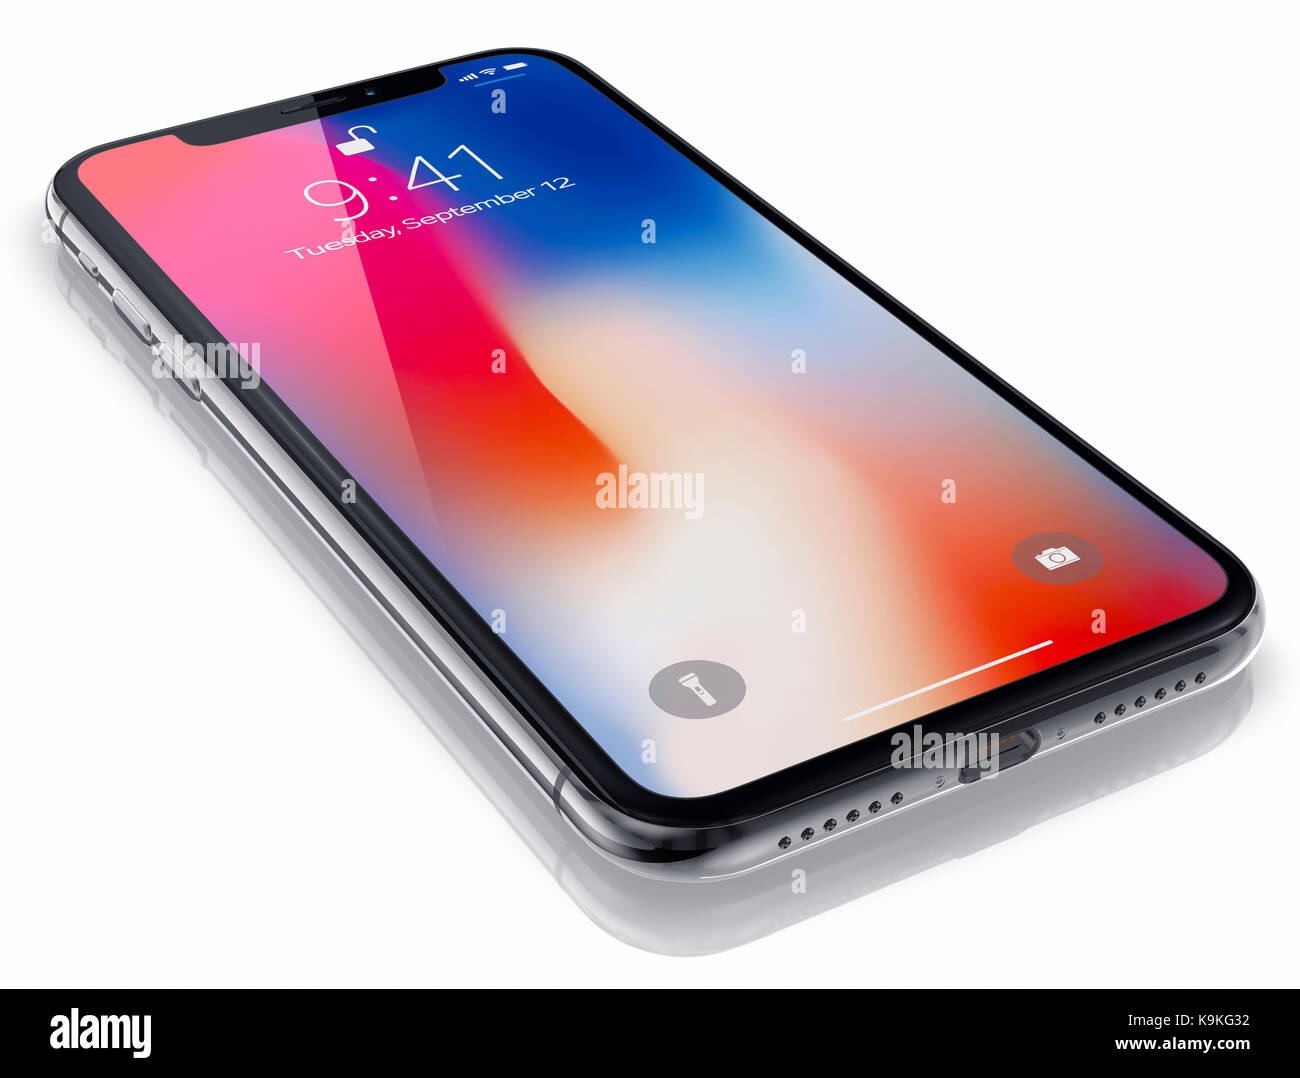 Galati, Rumänien - 20. September 2017: 3D-Render von zwei neuen iPhone X (10) Hinweisendes Editorial Bild auf weißem Hintergrund. Stockfoto